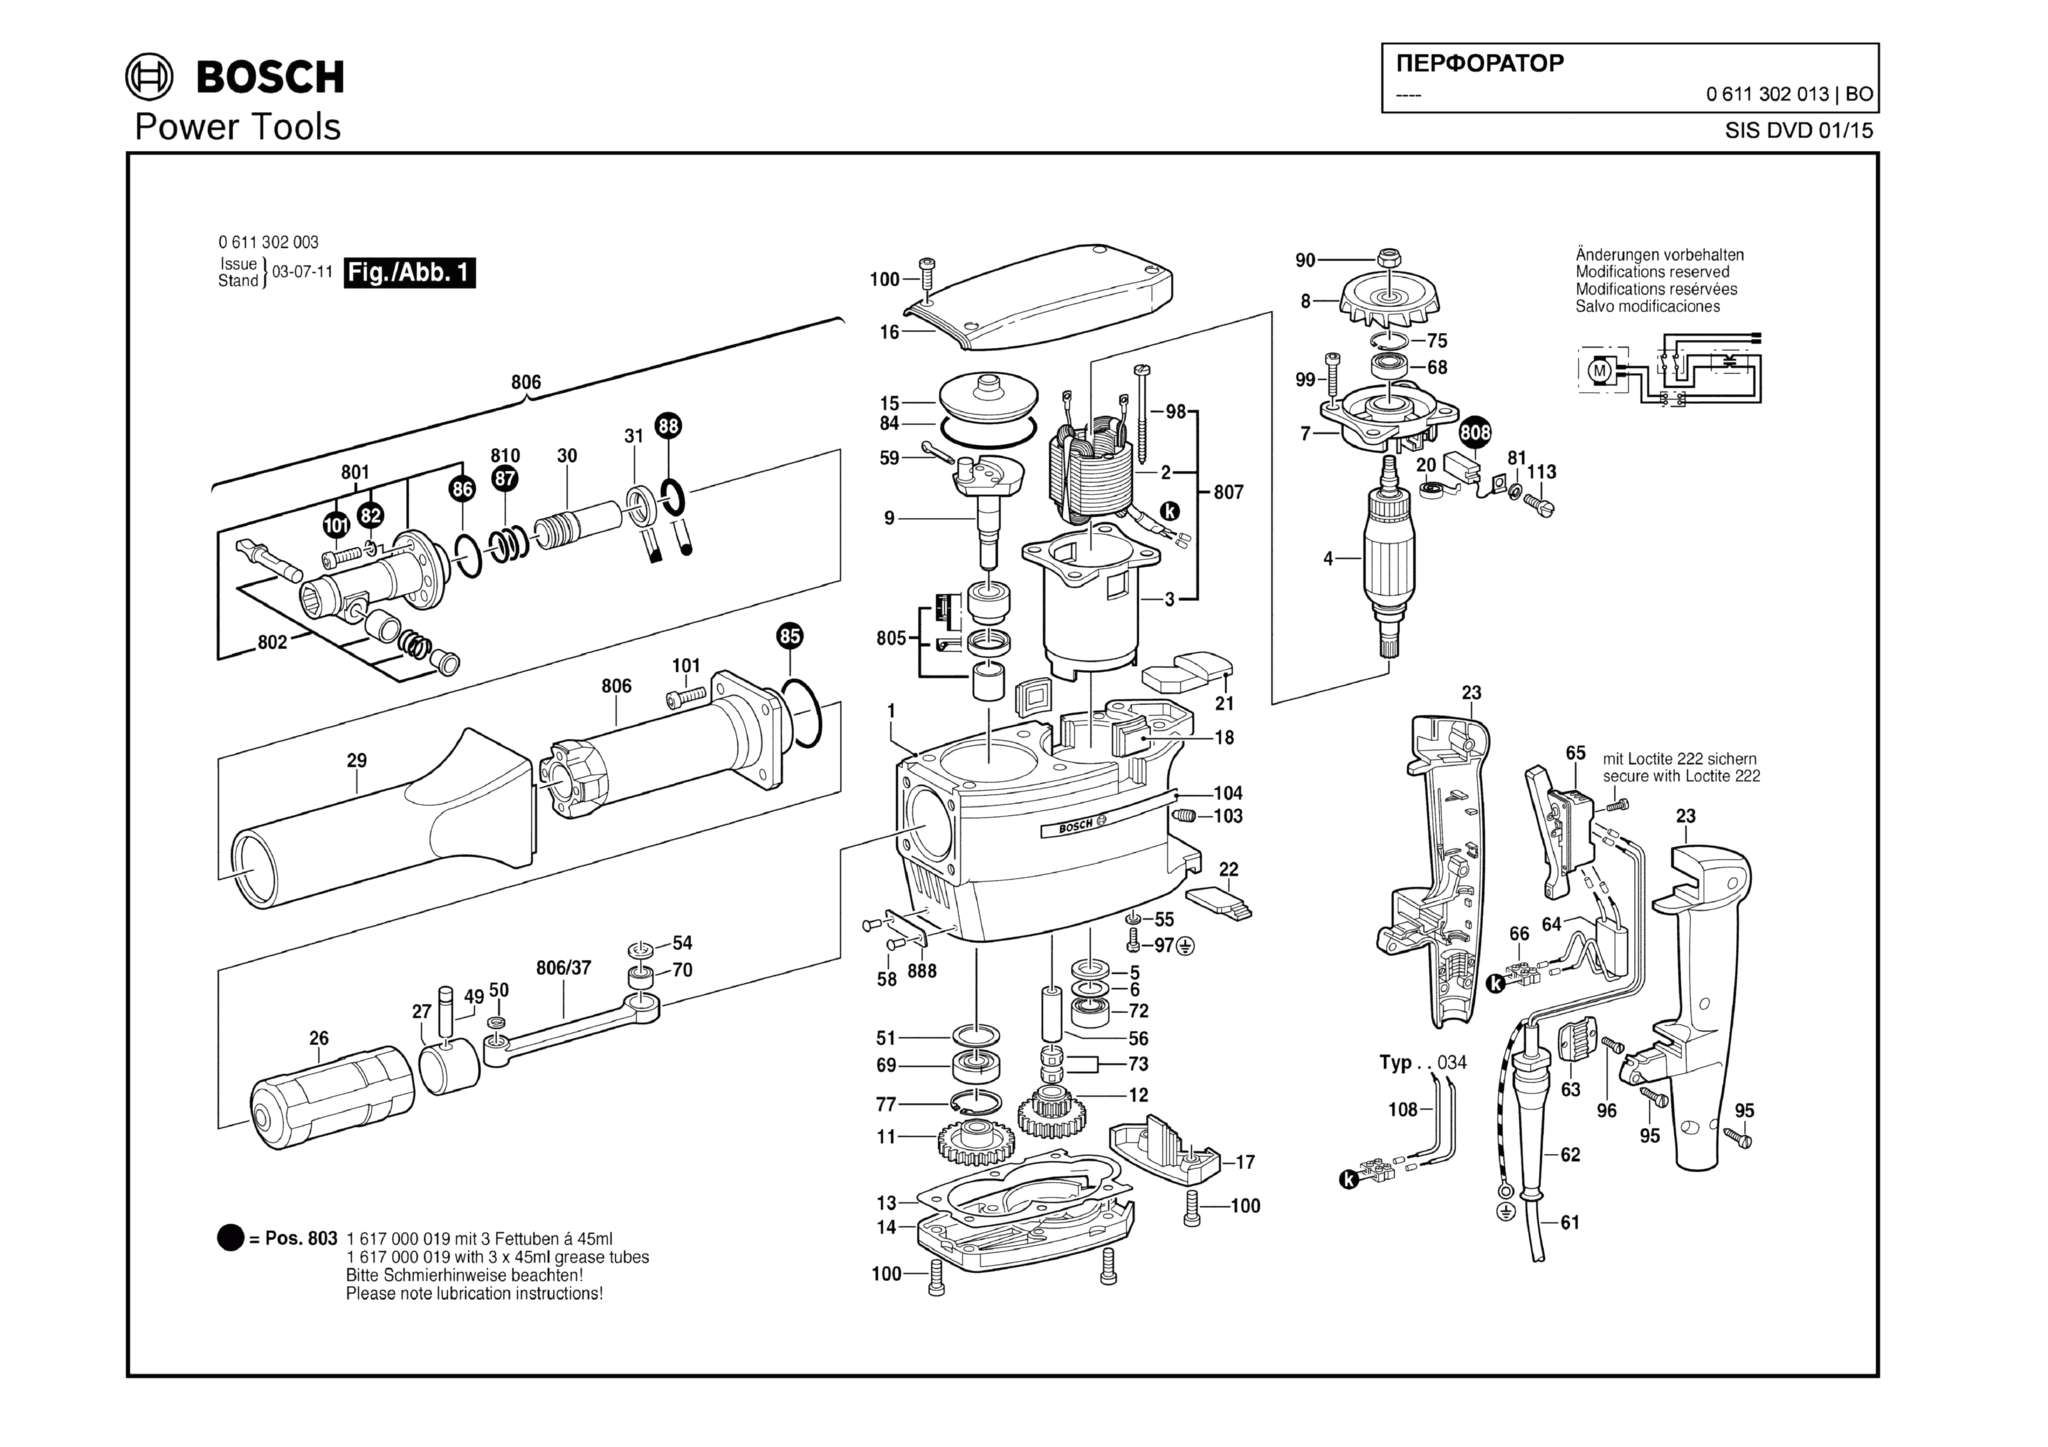 Запчасти, схема и деталировка Bosch (ТИП 0611302013)